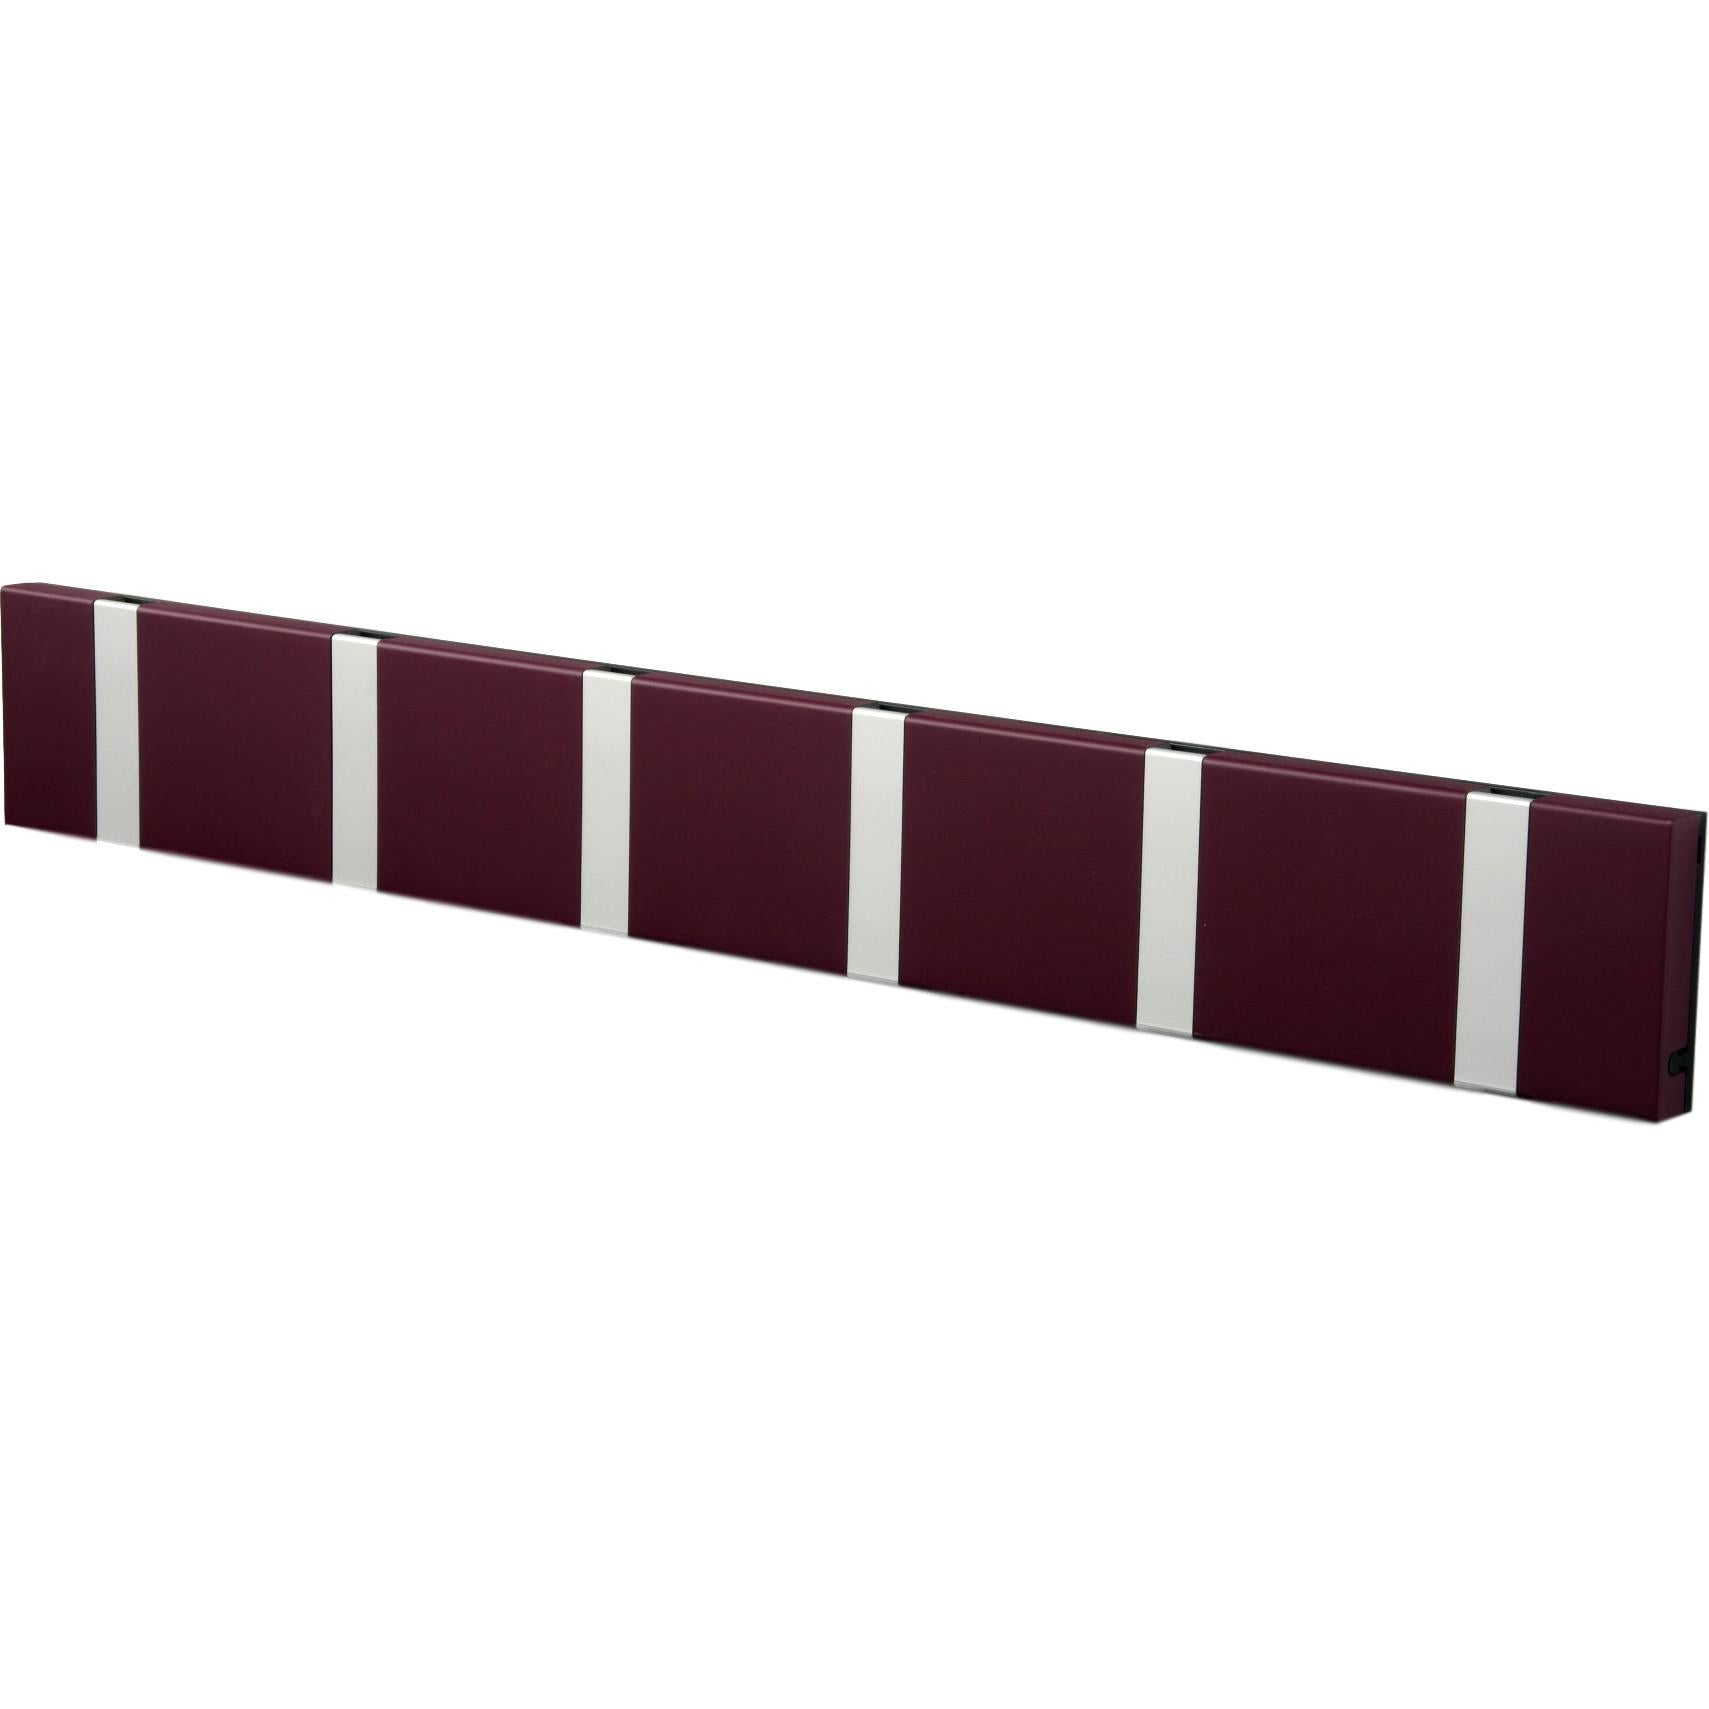 Loca Knax Horizontal Coat Rack 6 ganchos, púrpura/gris